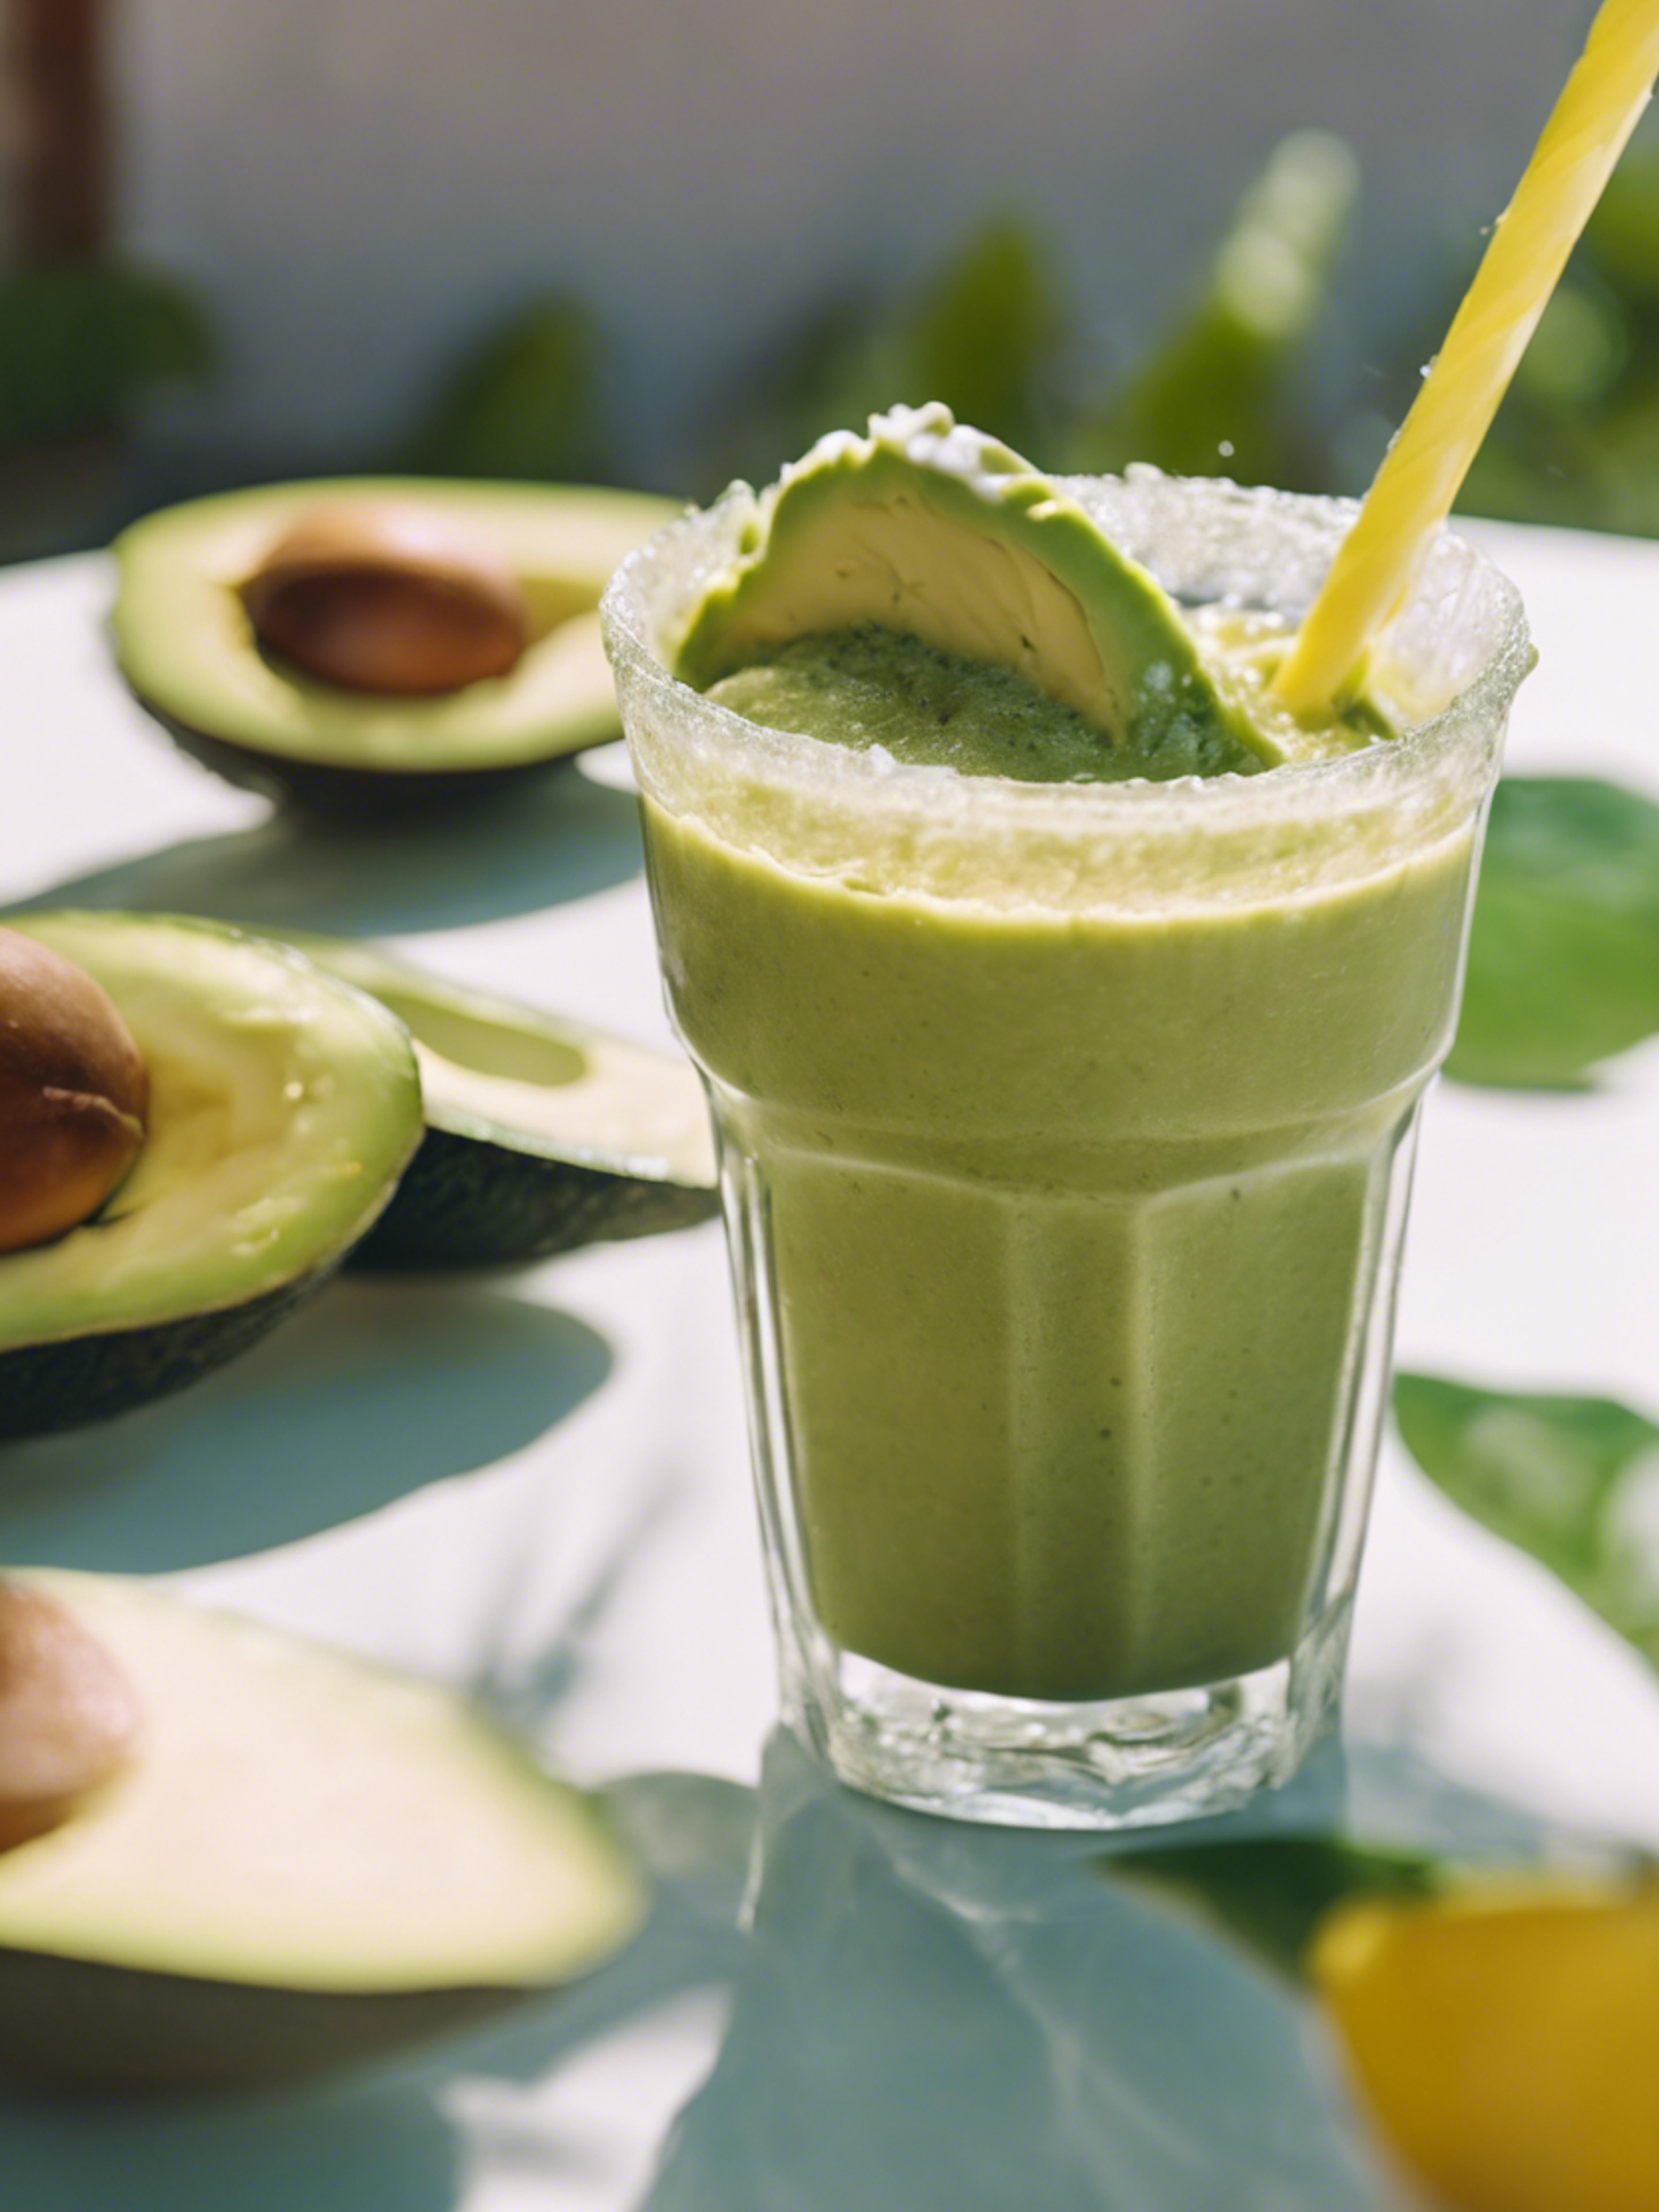 A playful avocado sipping on tropical smoothie on a hot summer day duvar kağıdı[3b128a2f6f1a4fb38d08]